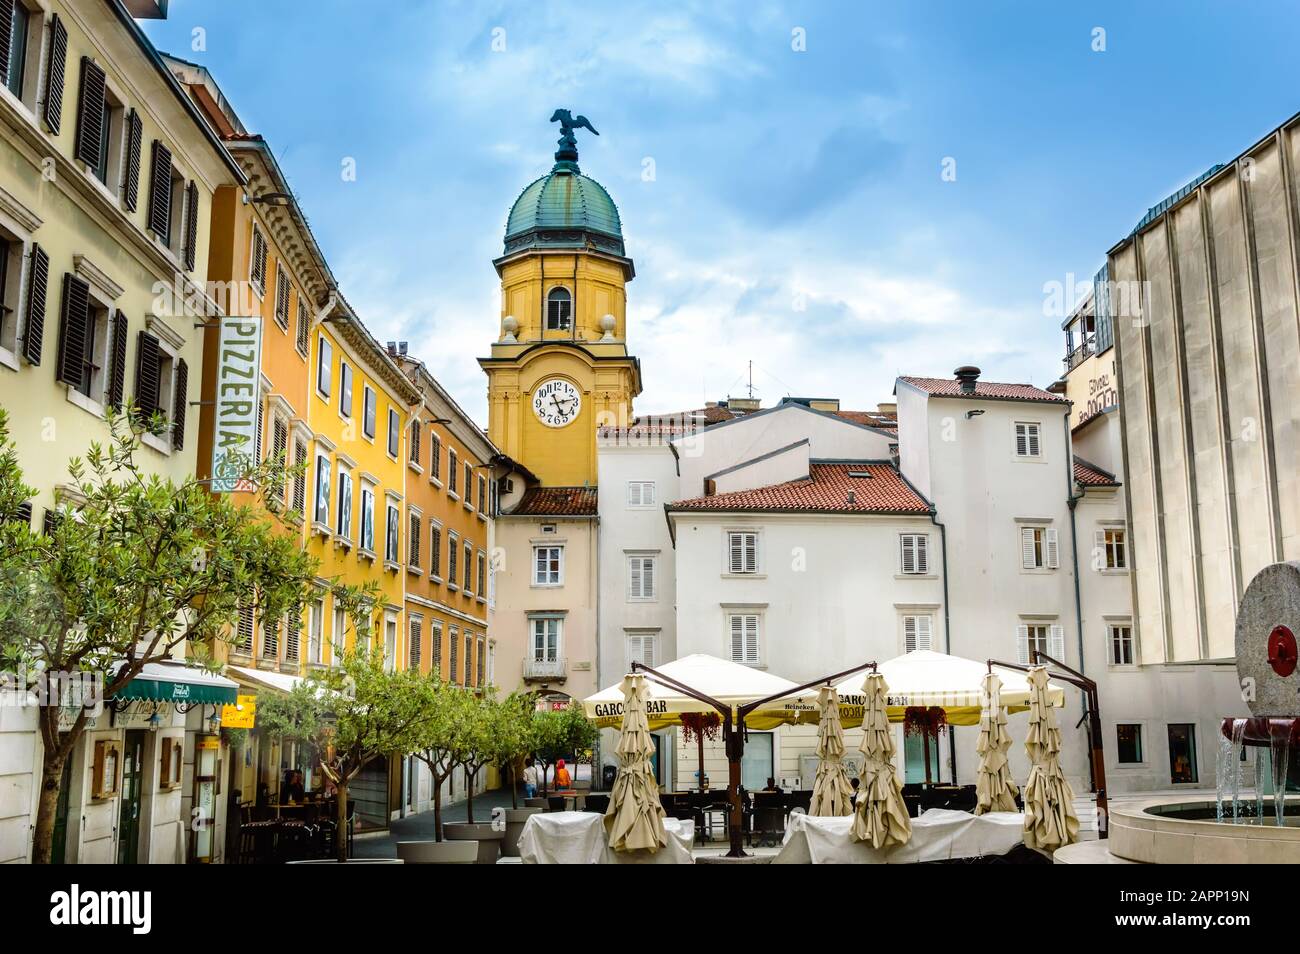 Rijeka, Kroatien - 19. Mai 2019: Platz hinter dem gelben City Clock Tower mit Café-Tischen, Sonnenschirmen und Olivenbäumen an einem sonnigen Tag. Gelbe Gebäude mit Witz Stockfoto